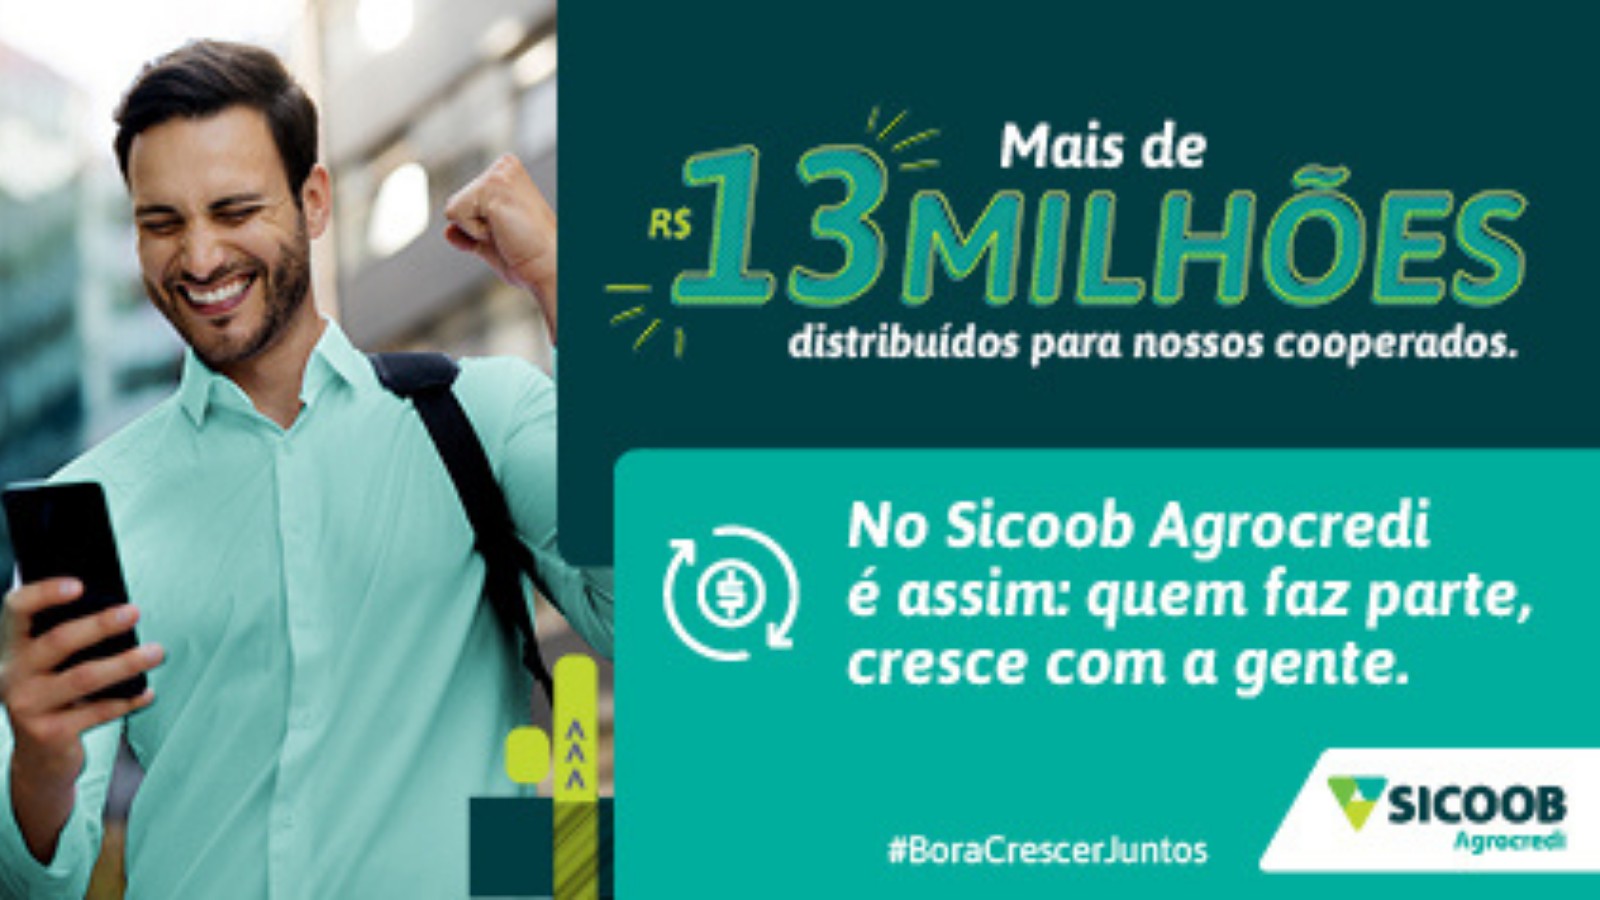 Sicoob Agrocredi distribui R$ 13 milhões em sobras para seus cooperados